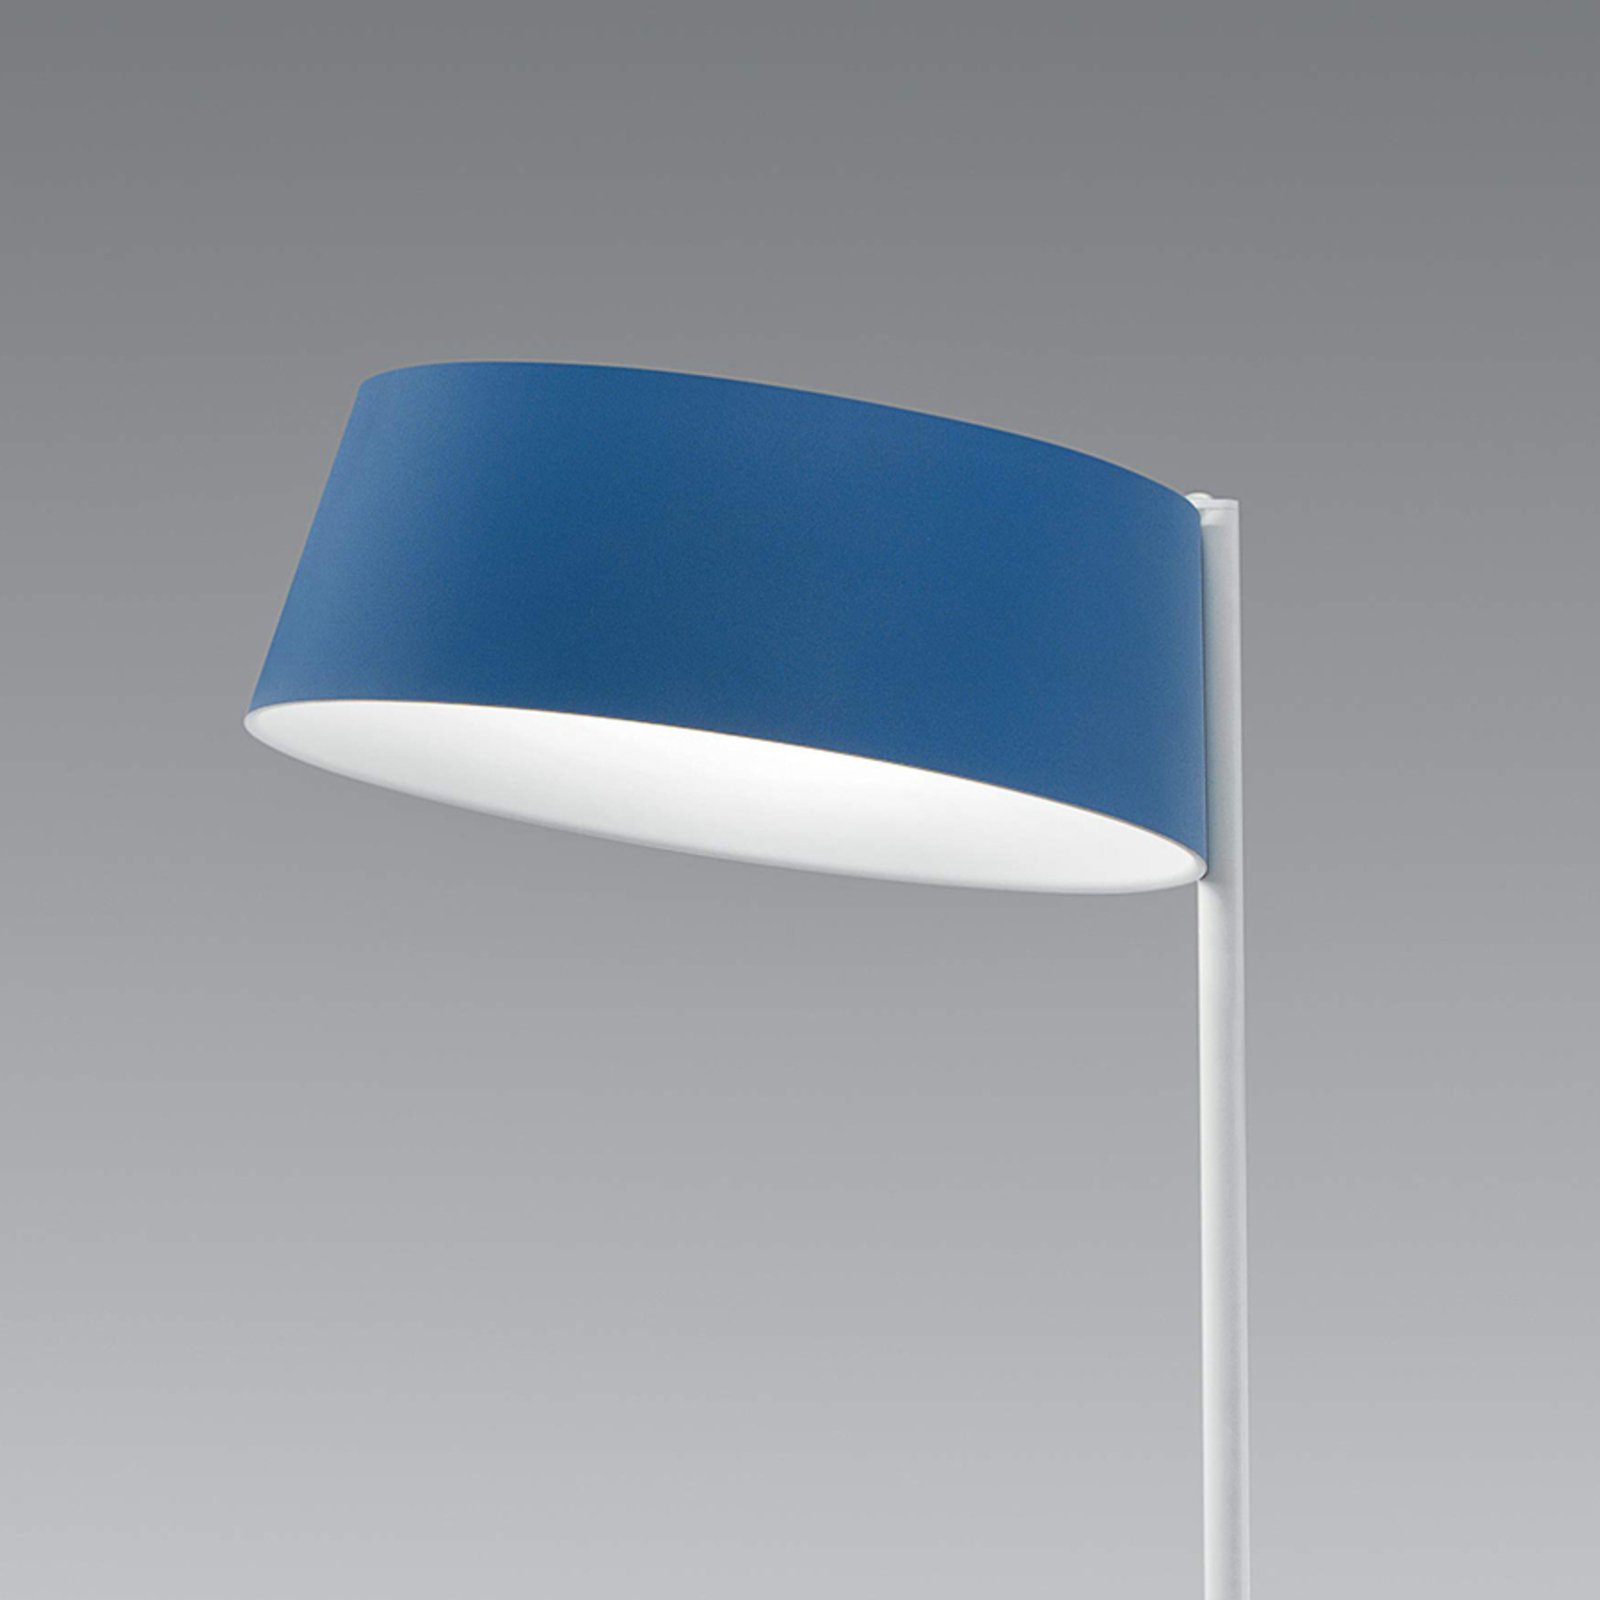 Oxygen_FL2 LED podna svjetiljka dizajnirana u azurno plavoj boji